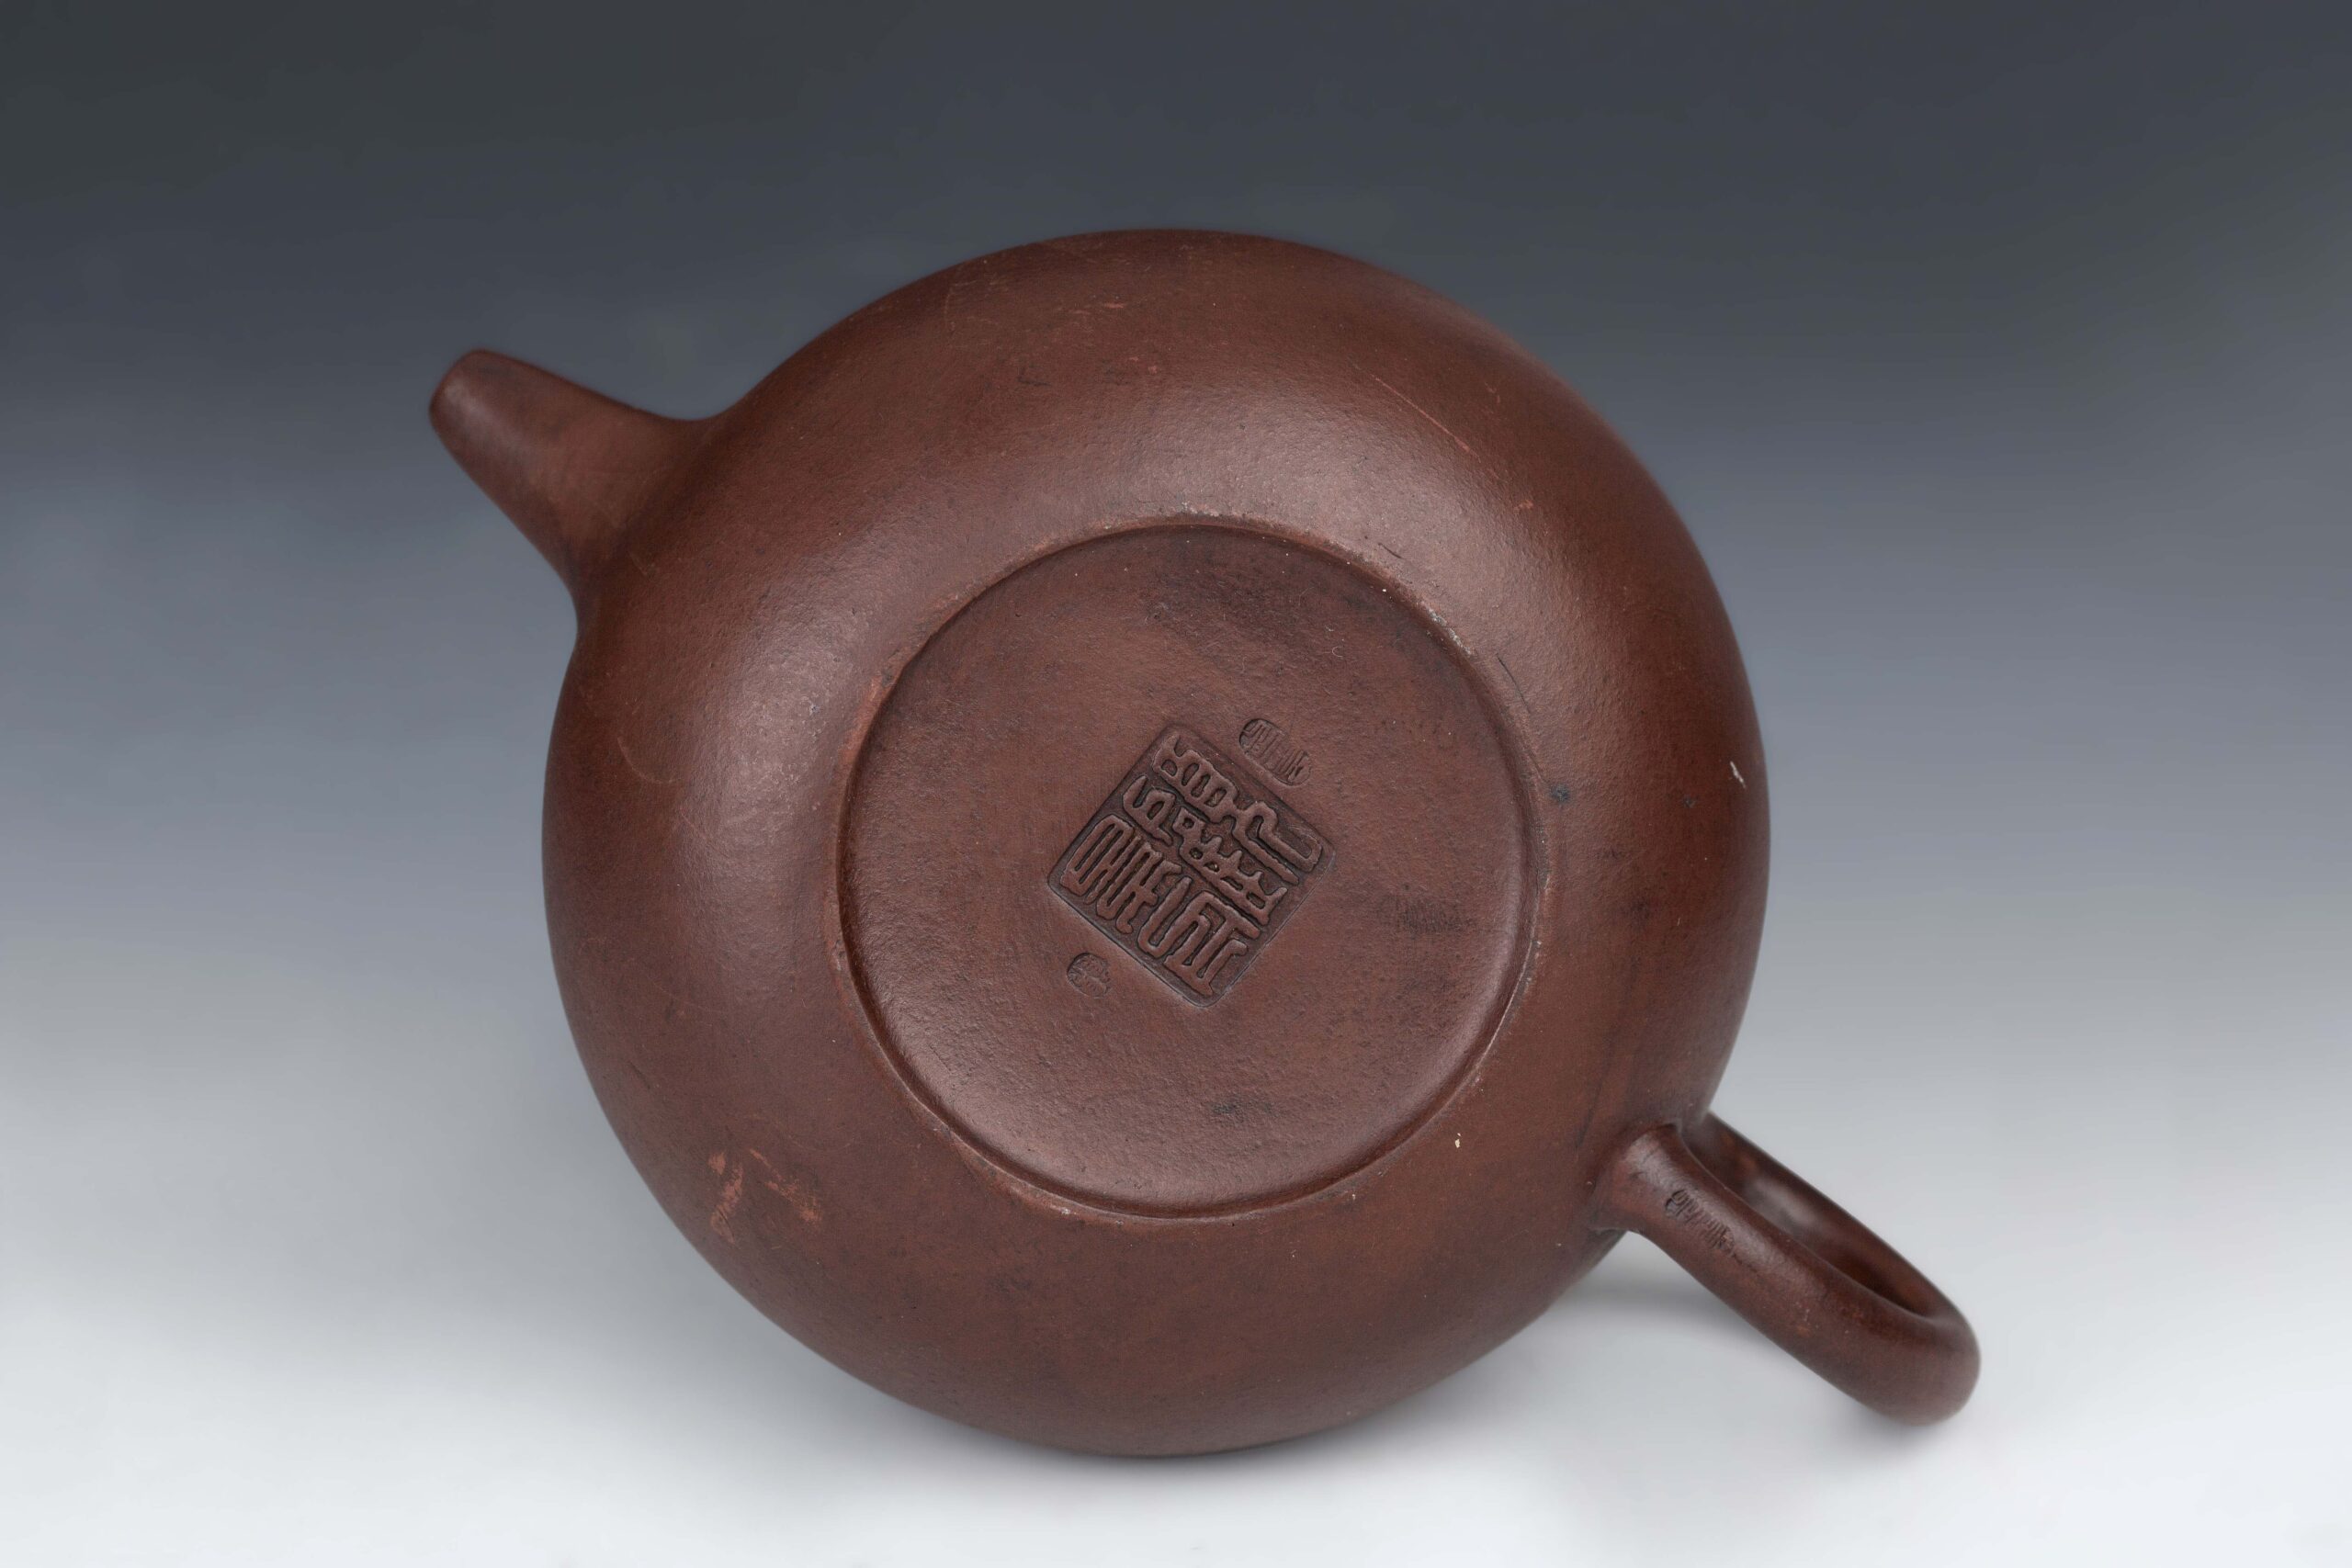 Set of Zisha teapot with Gu Jingzhou mark紫砂壶顾景舟款– Time Art 